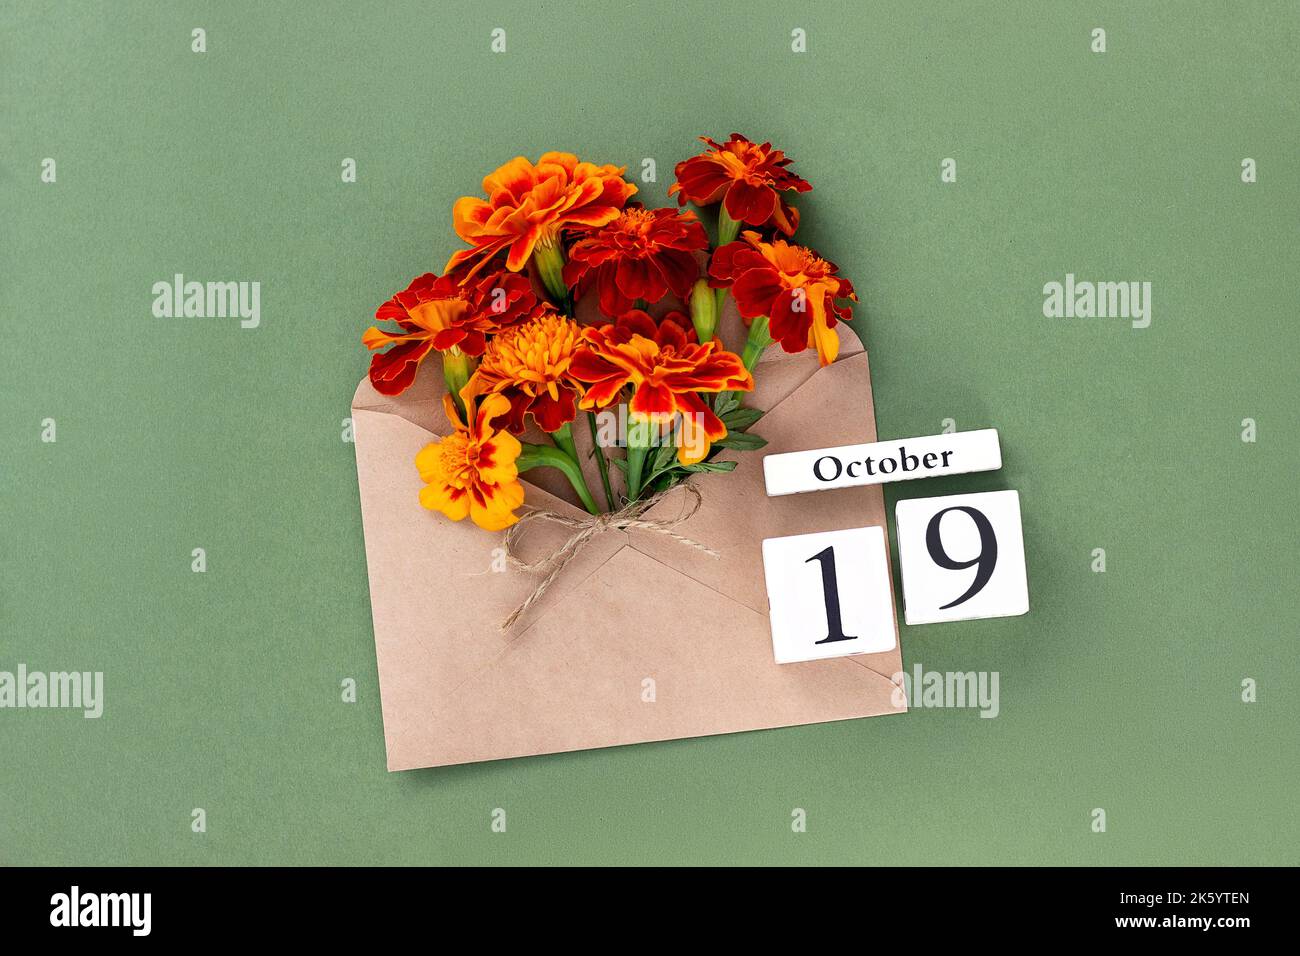 19 octobre. Bouquet de fleurs orange en enveloppe artisanale et date calendrier sur fond vert. Concept minimal Hello Fall. Modèle pour votre conception, gr Banque D'Images